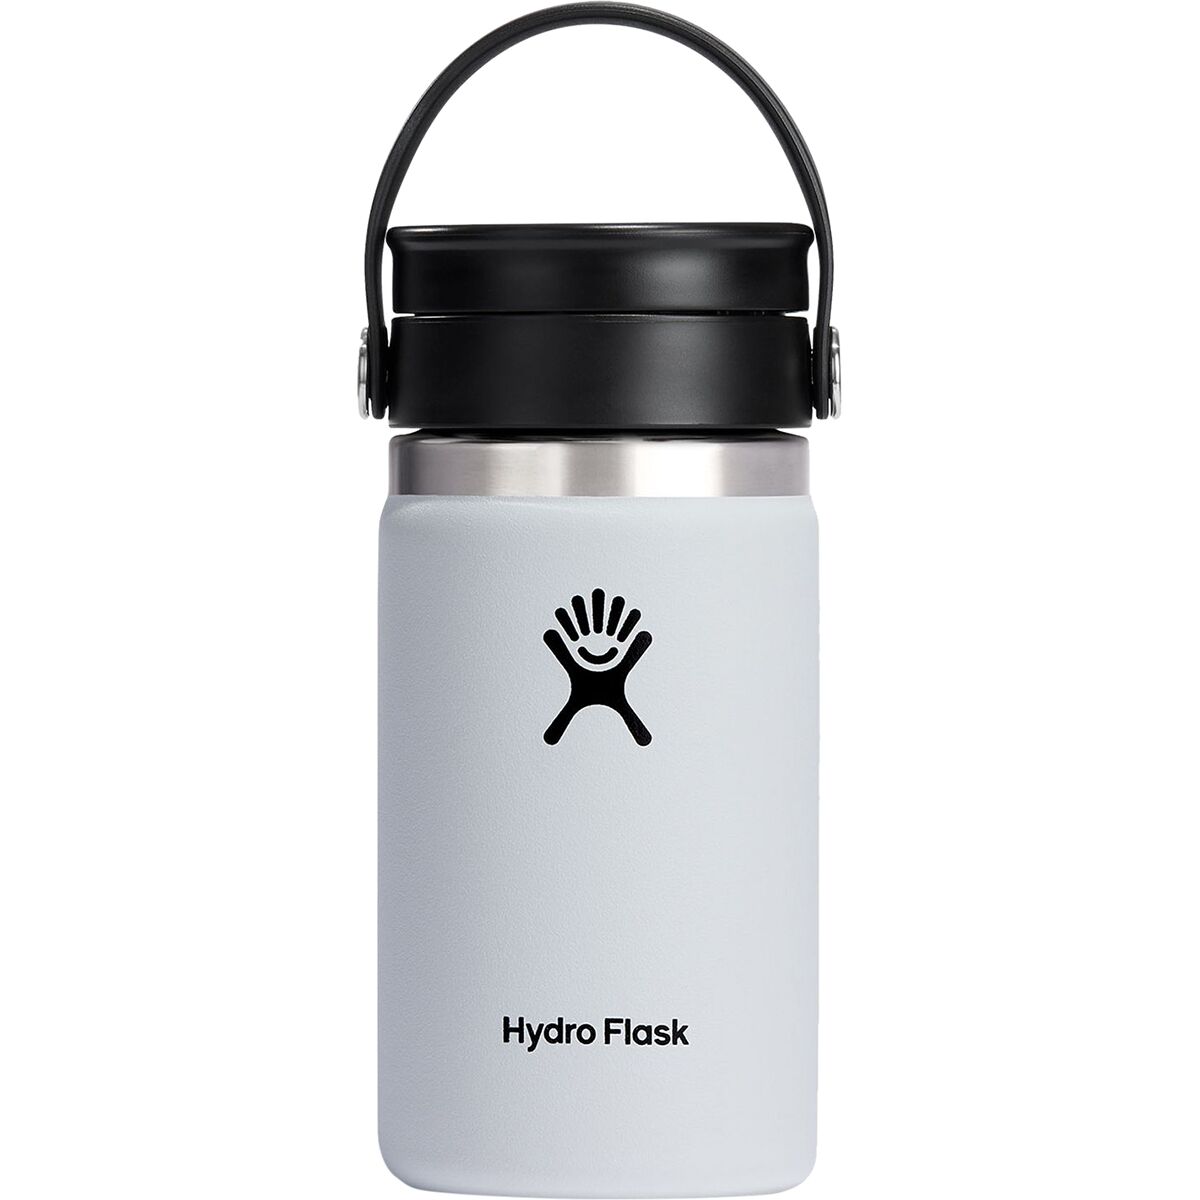 Hydro Flask 12oz Wide Mouth Flex Sip Coffee Mug